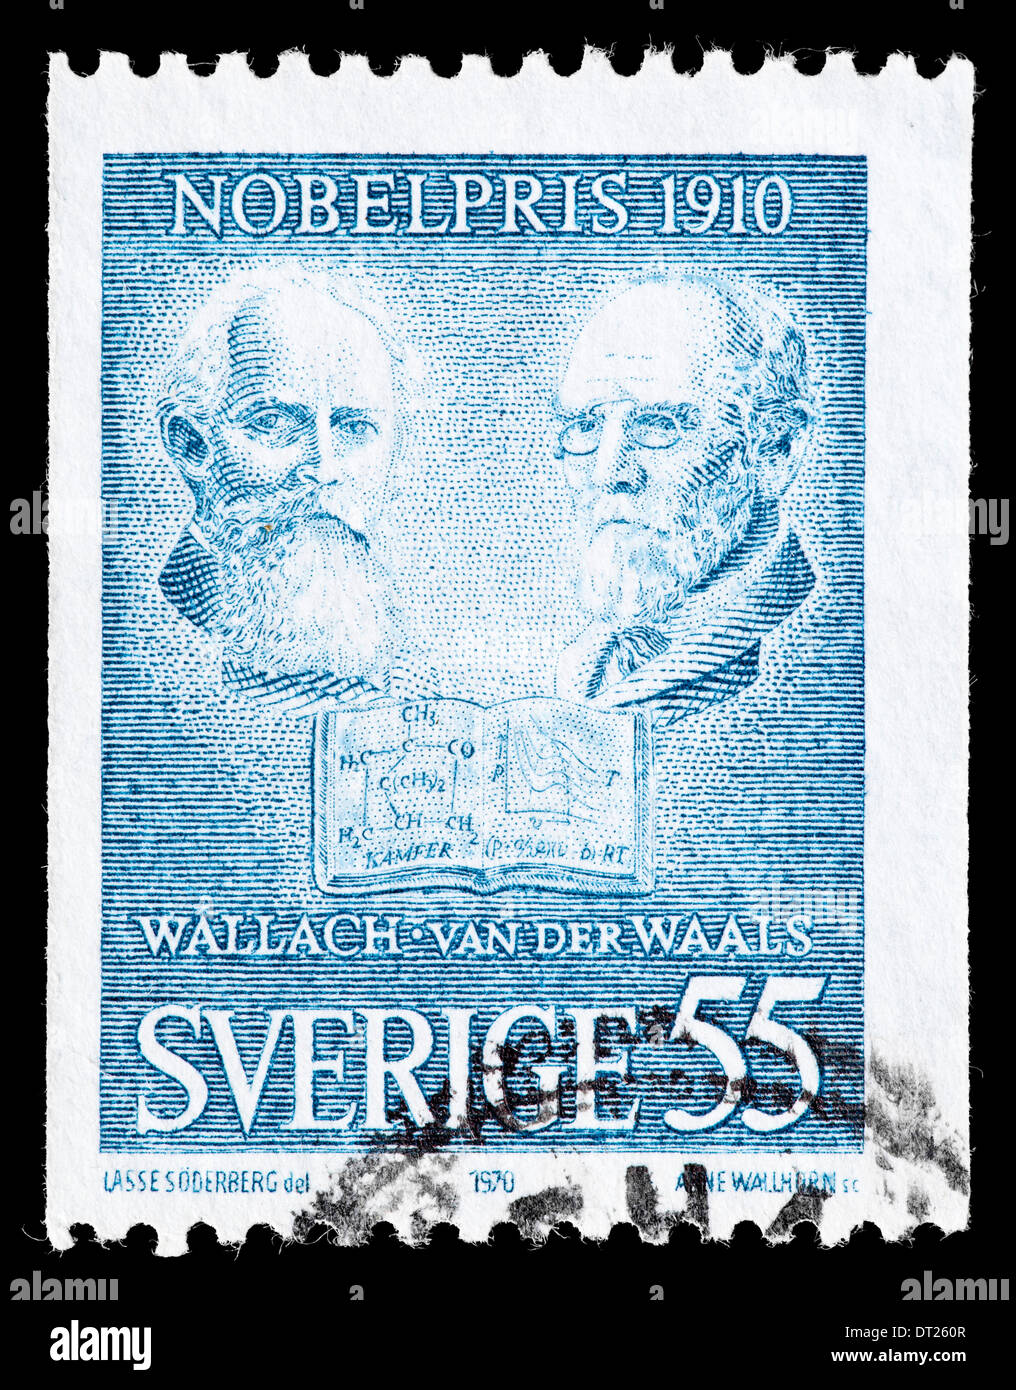 Postage stamp: Sweden, 1970, Wallach/ van der Waals, Nobel prize 1910 Stock Photo